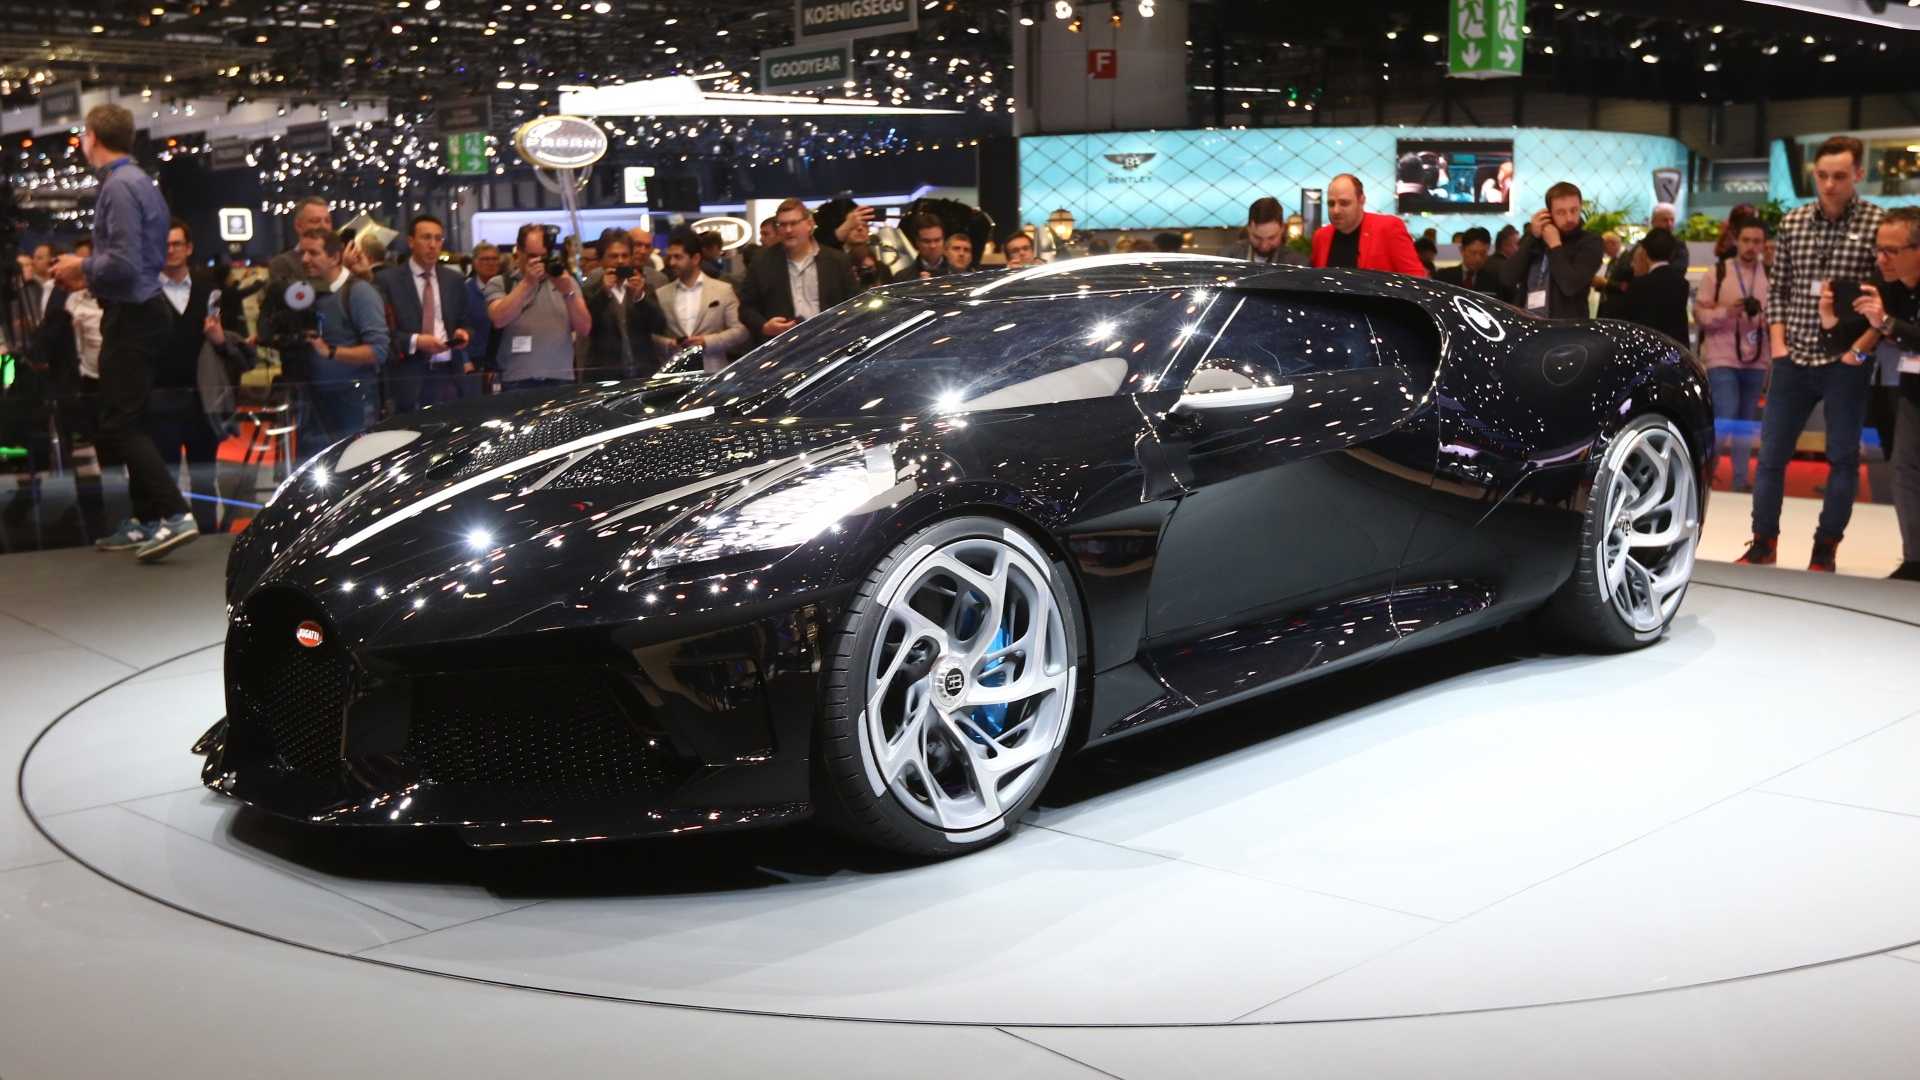 Wallpaper Bugatti La Voiture Noire